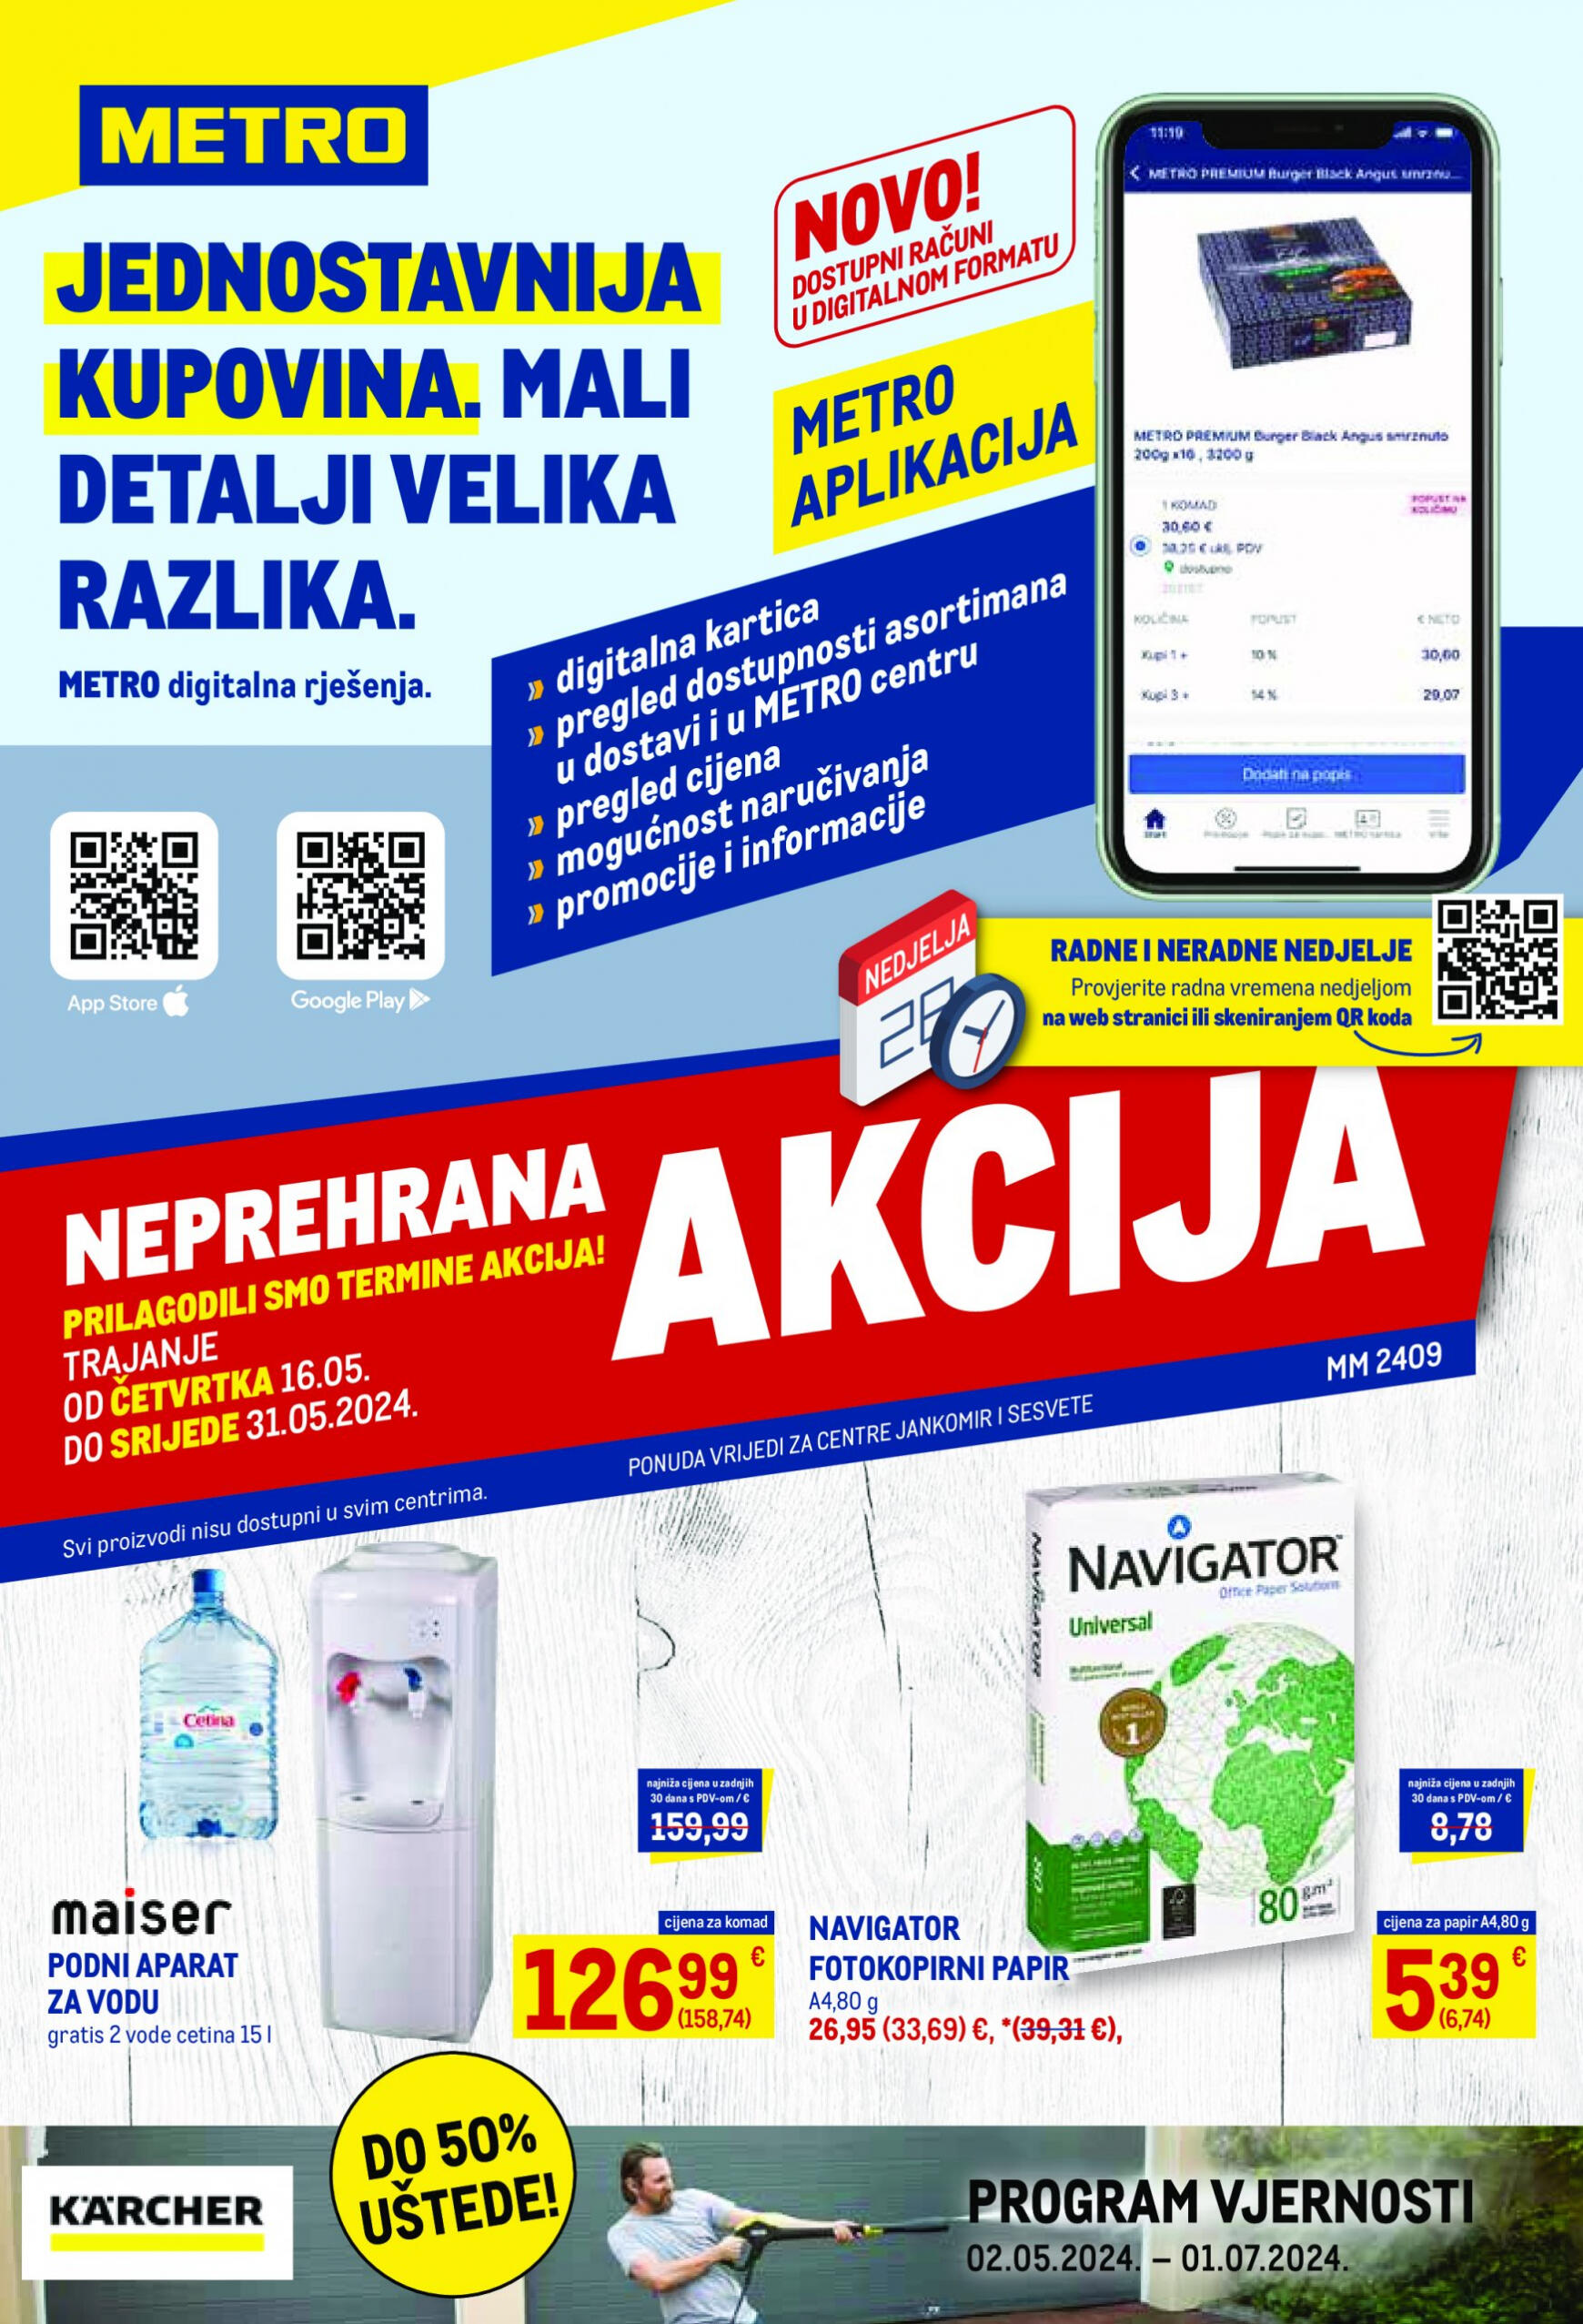 metro - Novi katalog Metro - Neprehrana 16.05. - 31.05. - page: 1